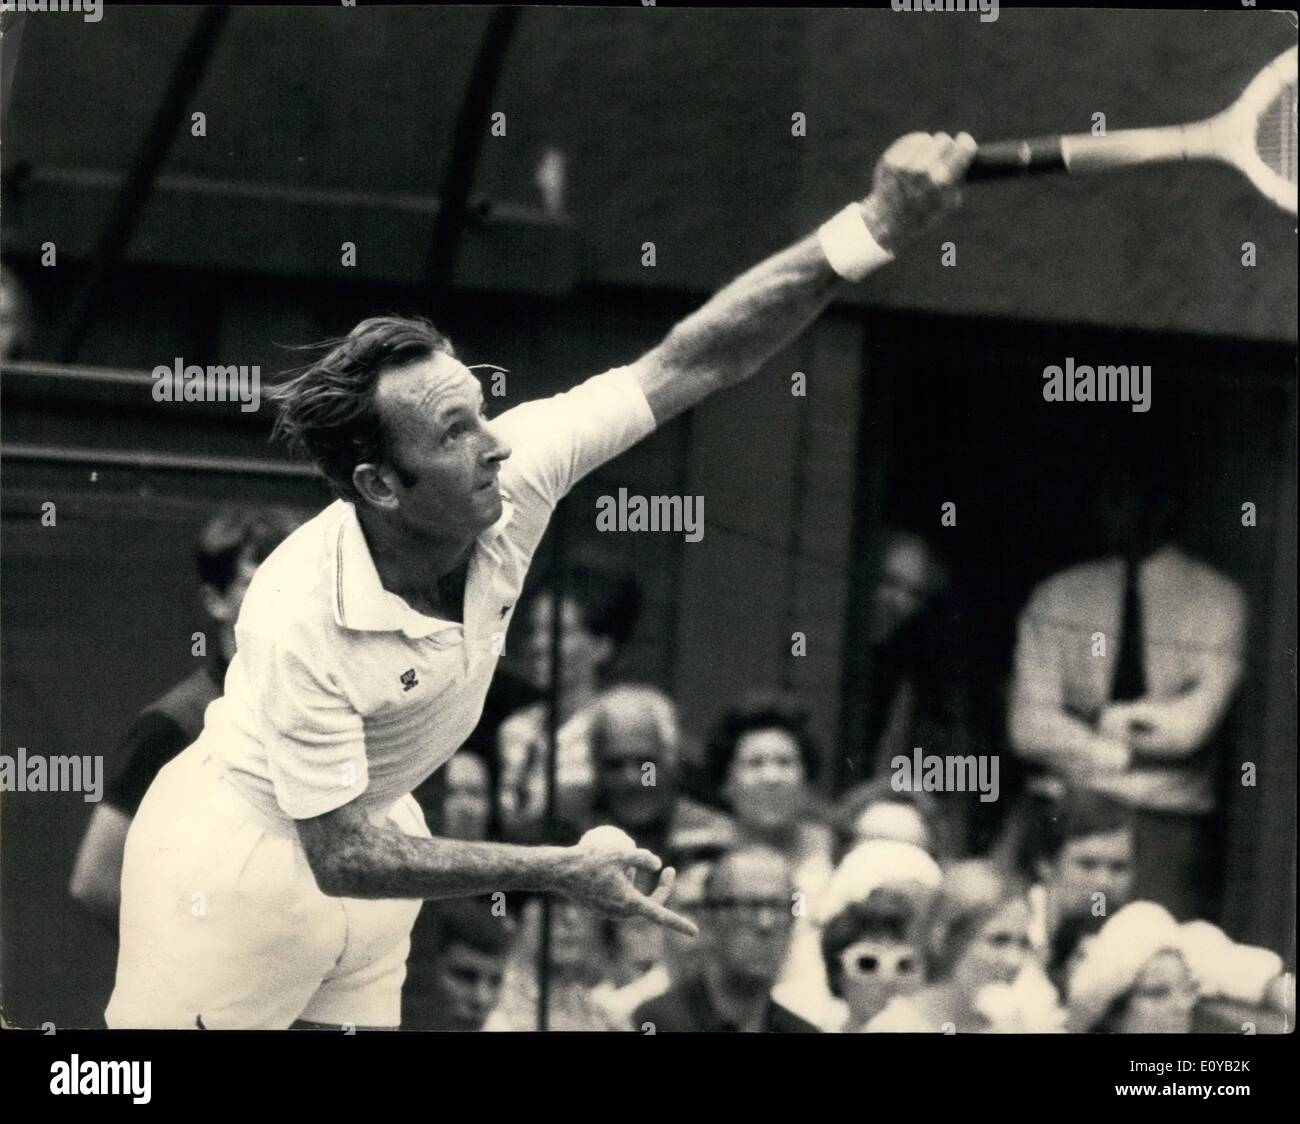 Lug. 07, 1969 - Wimbledon Tennis Championships Laver Australia Versus Ashe U.S. : La Rod Laver Australia il campione in carica Foto Stock